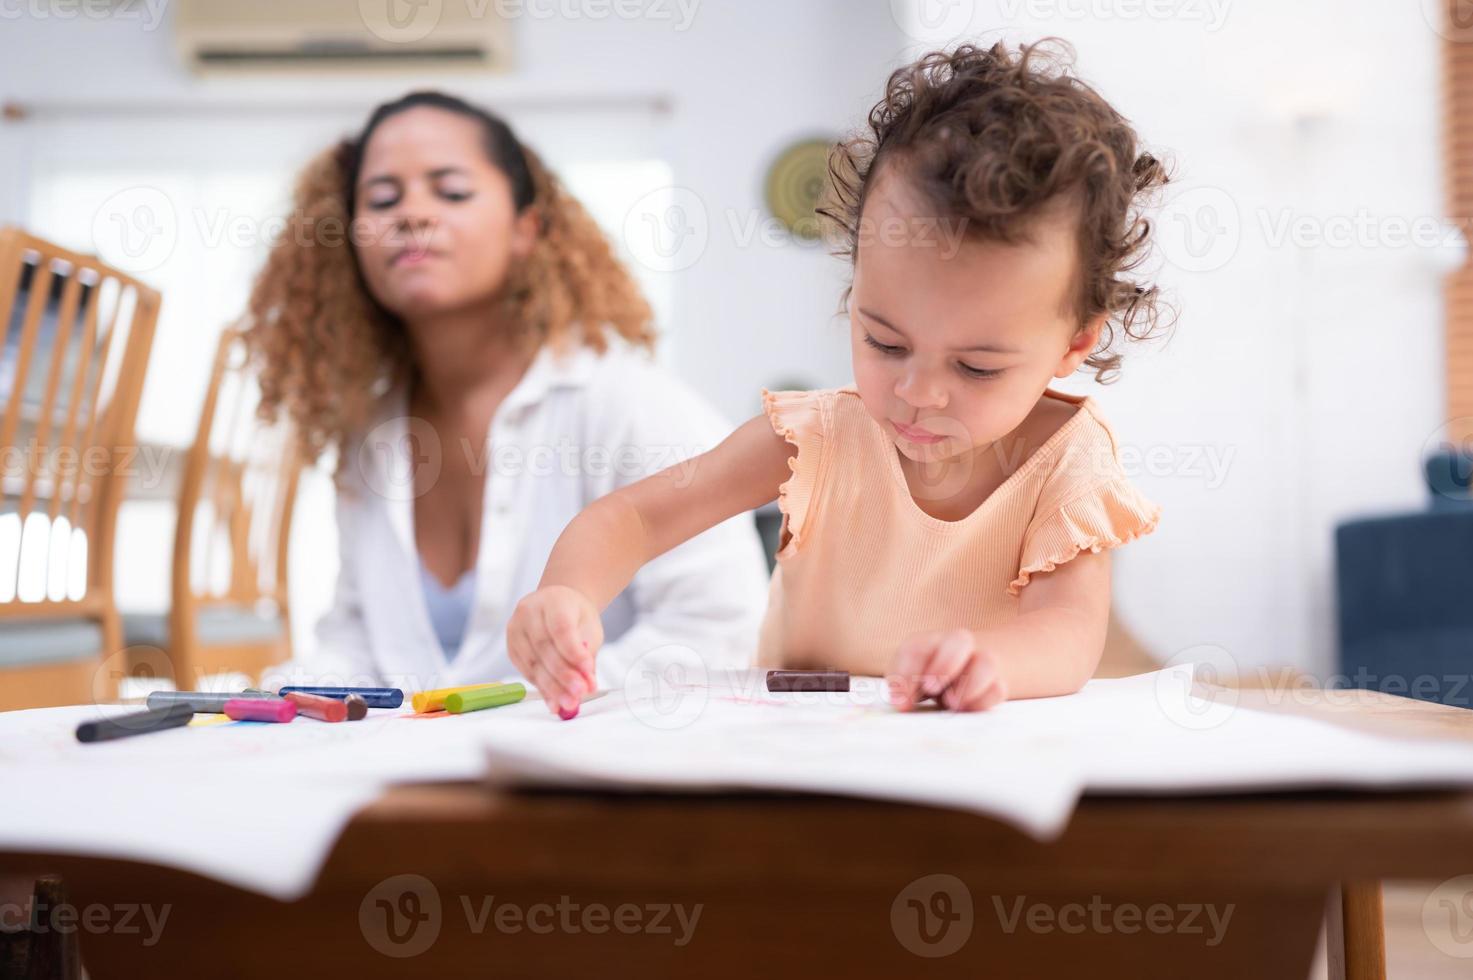 un pequeño niño imaginación es representado mediante de colores lápiz dibujos, con el madre atentamente supervisando en el vivo habitación de el casa. foto